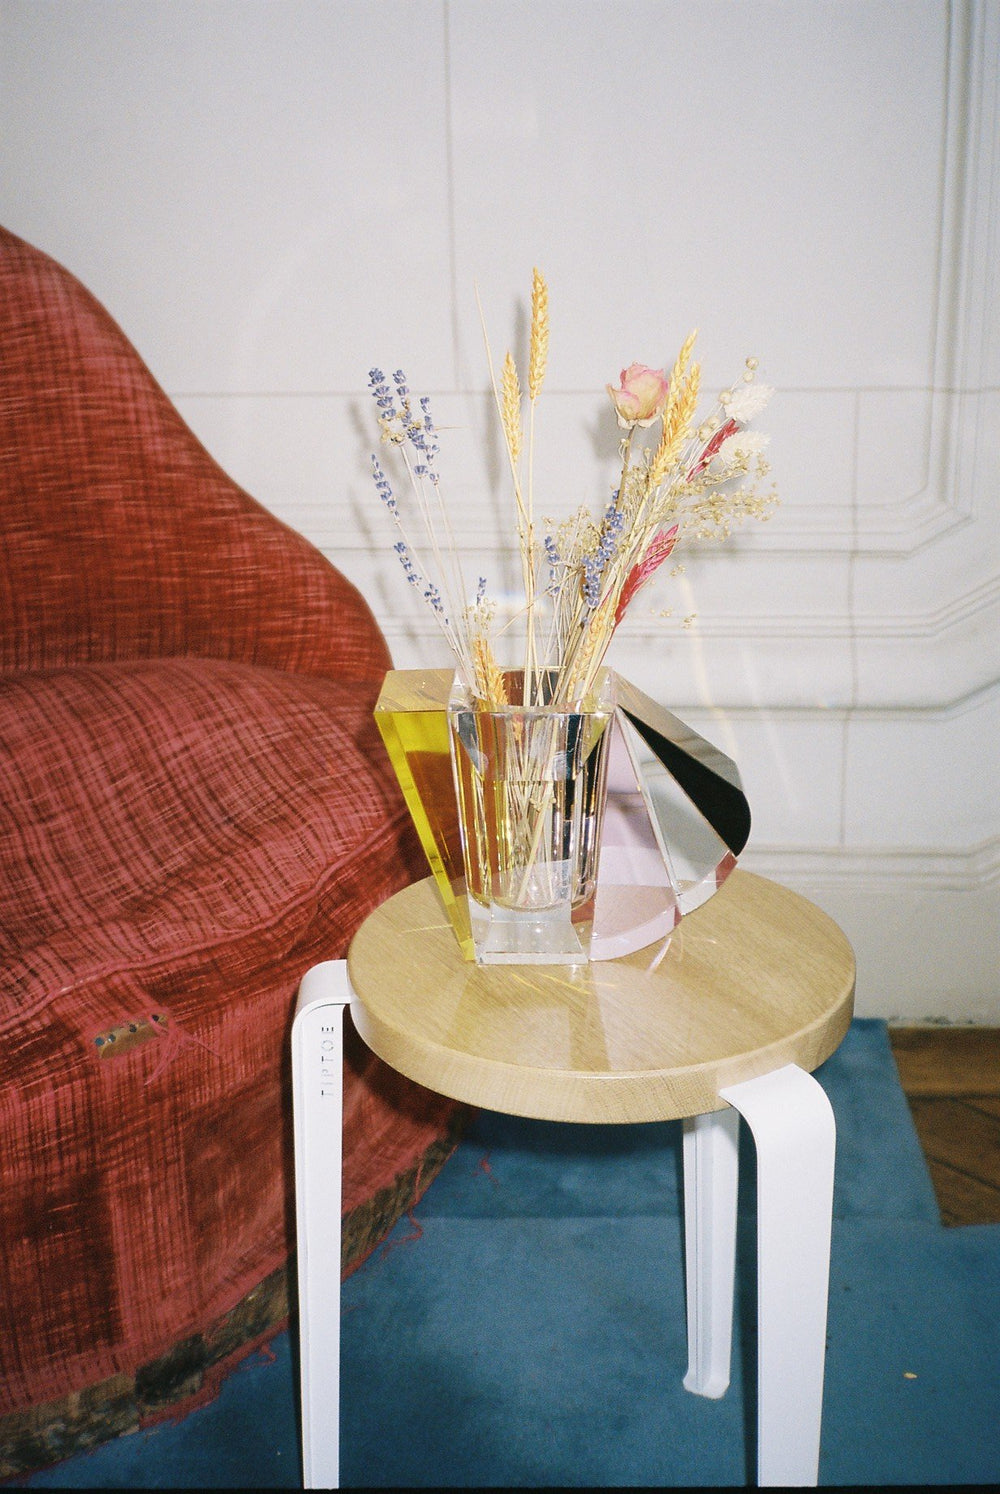 Vase i klar, brun, gul og lyserød krystal med blomster i, på træskammel ved siden af en rød lænestol.